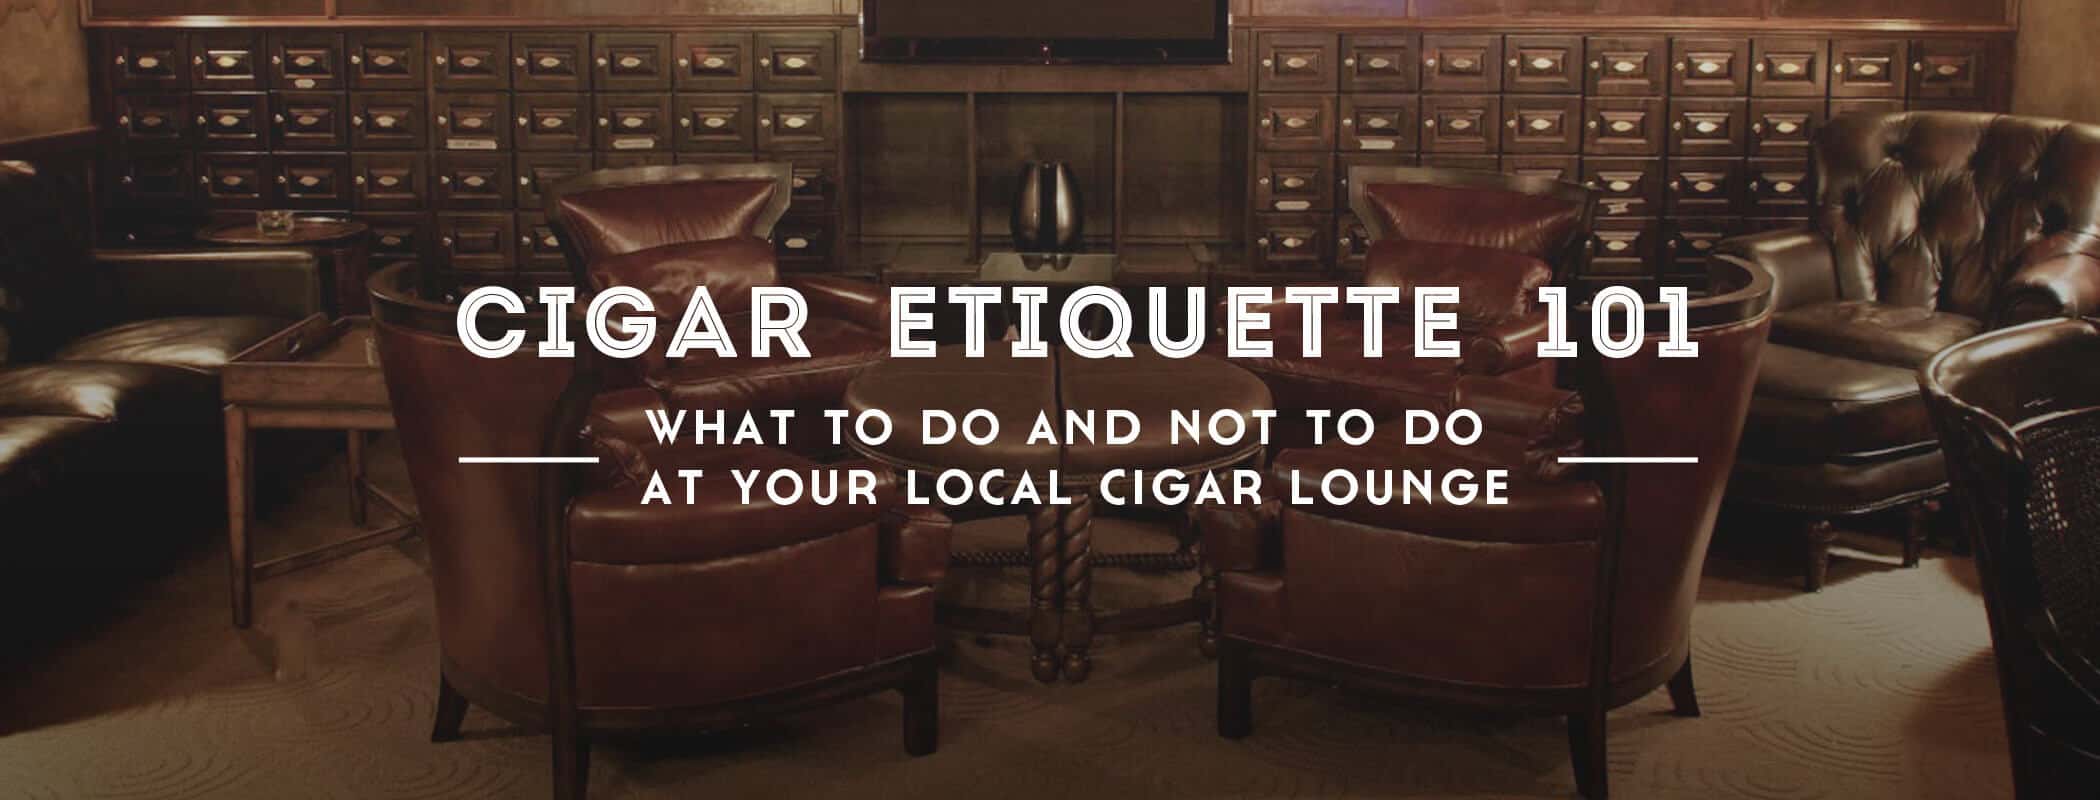 Cigar Etiquette 101 Your Local